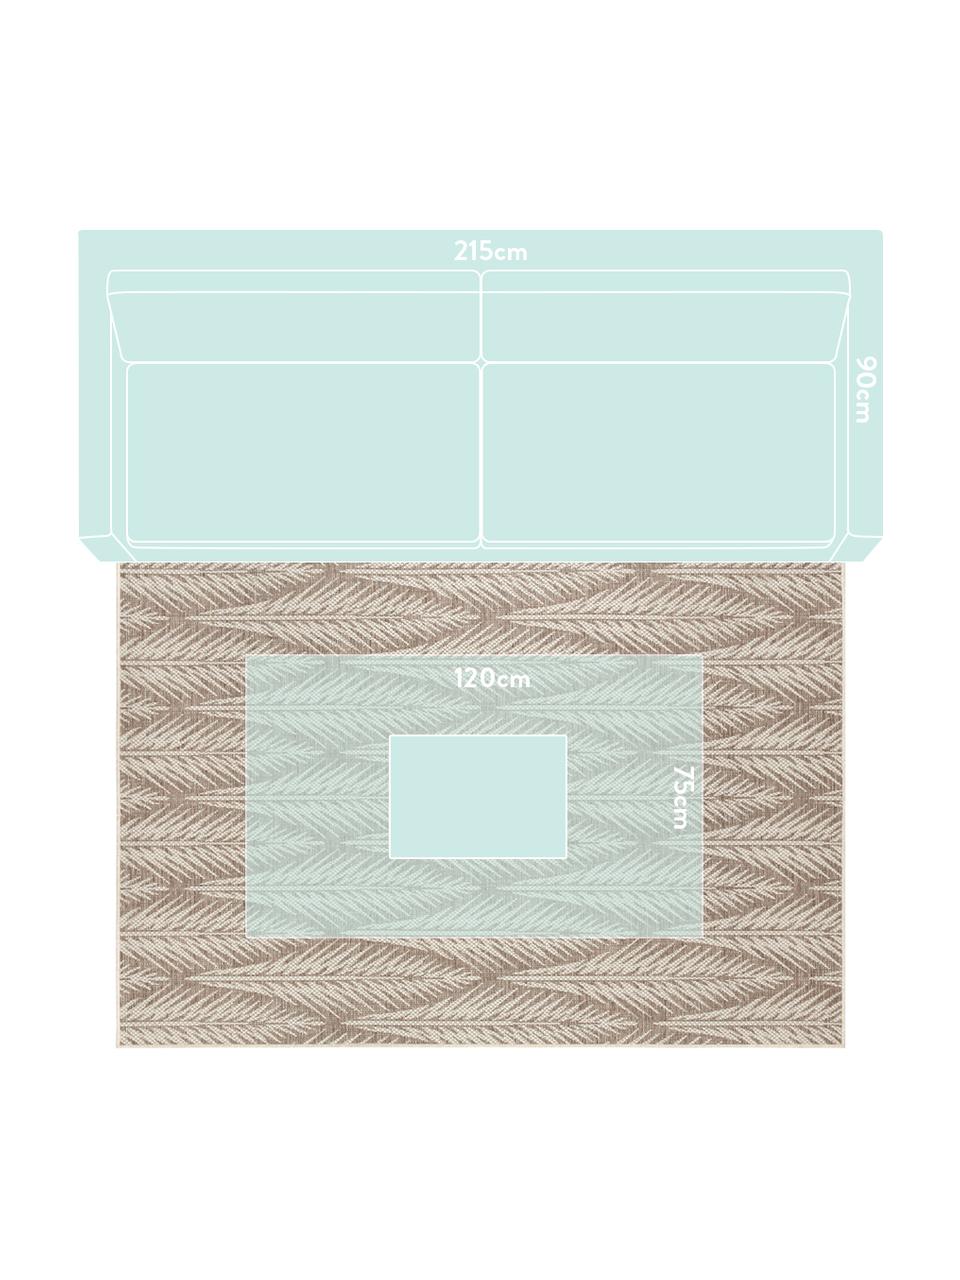 Tappeto di design da interno-esterno Pella, Polipropilene, Taupe, beige, Larg. 140 x Lung. 200 cm (taglia S)